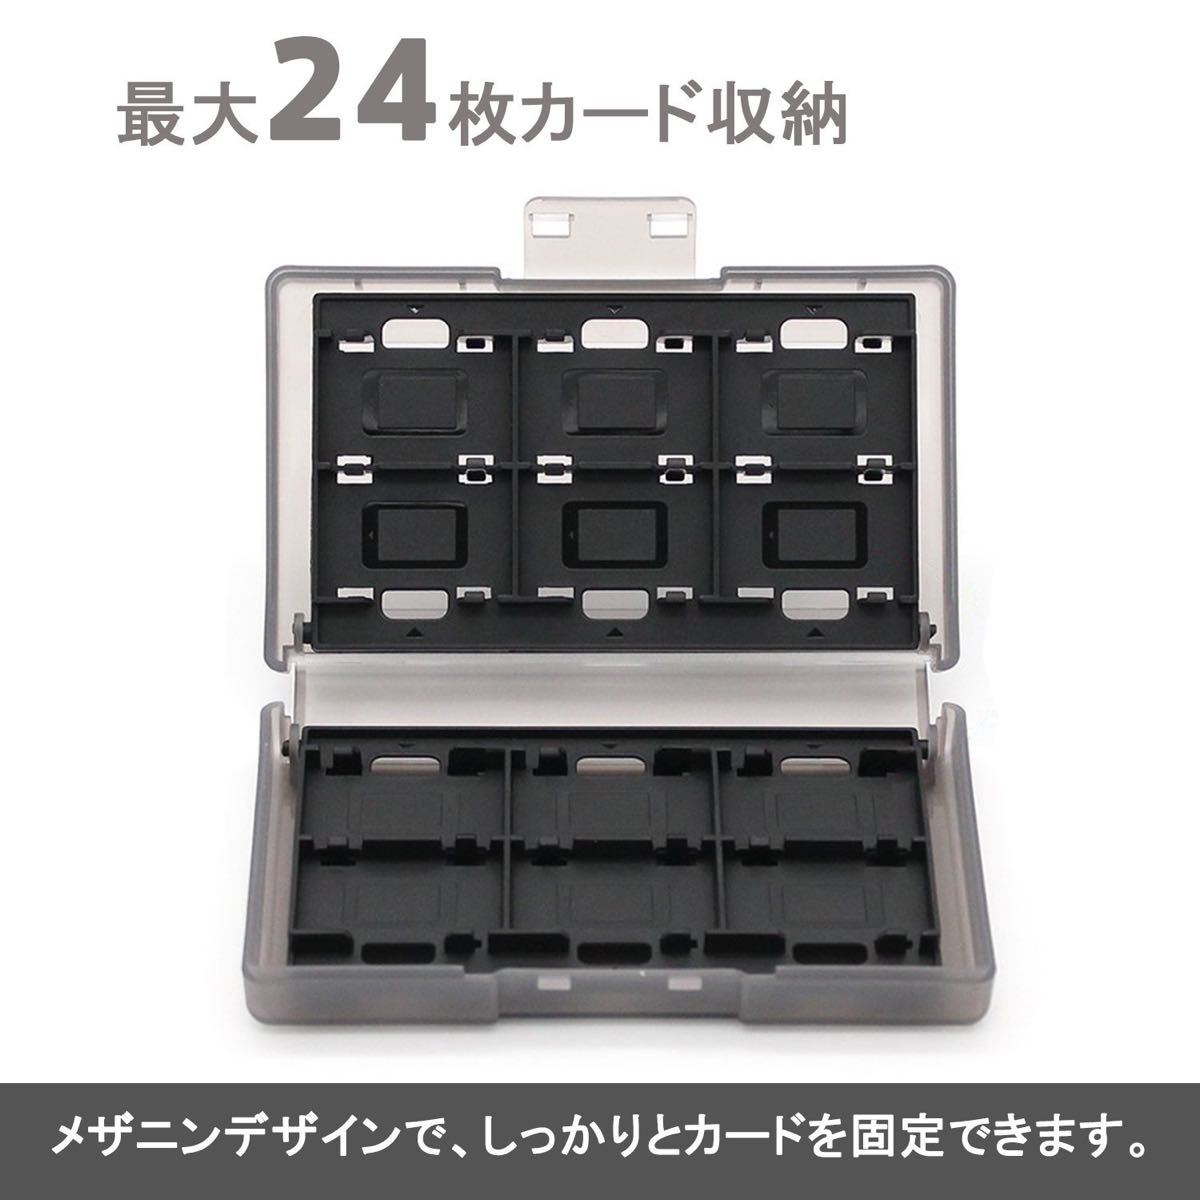 ニンテンドー スイッチ 対応 任天堂スイッチ カードケース24(ブラック) for Nintendo Switch カードケース